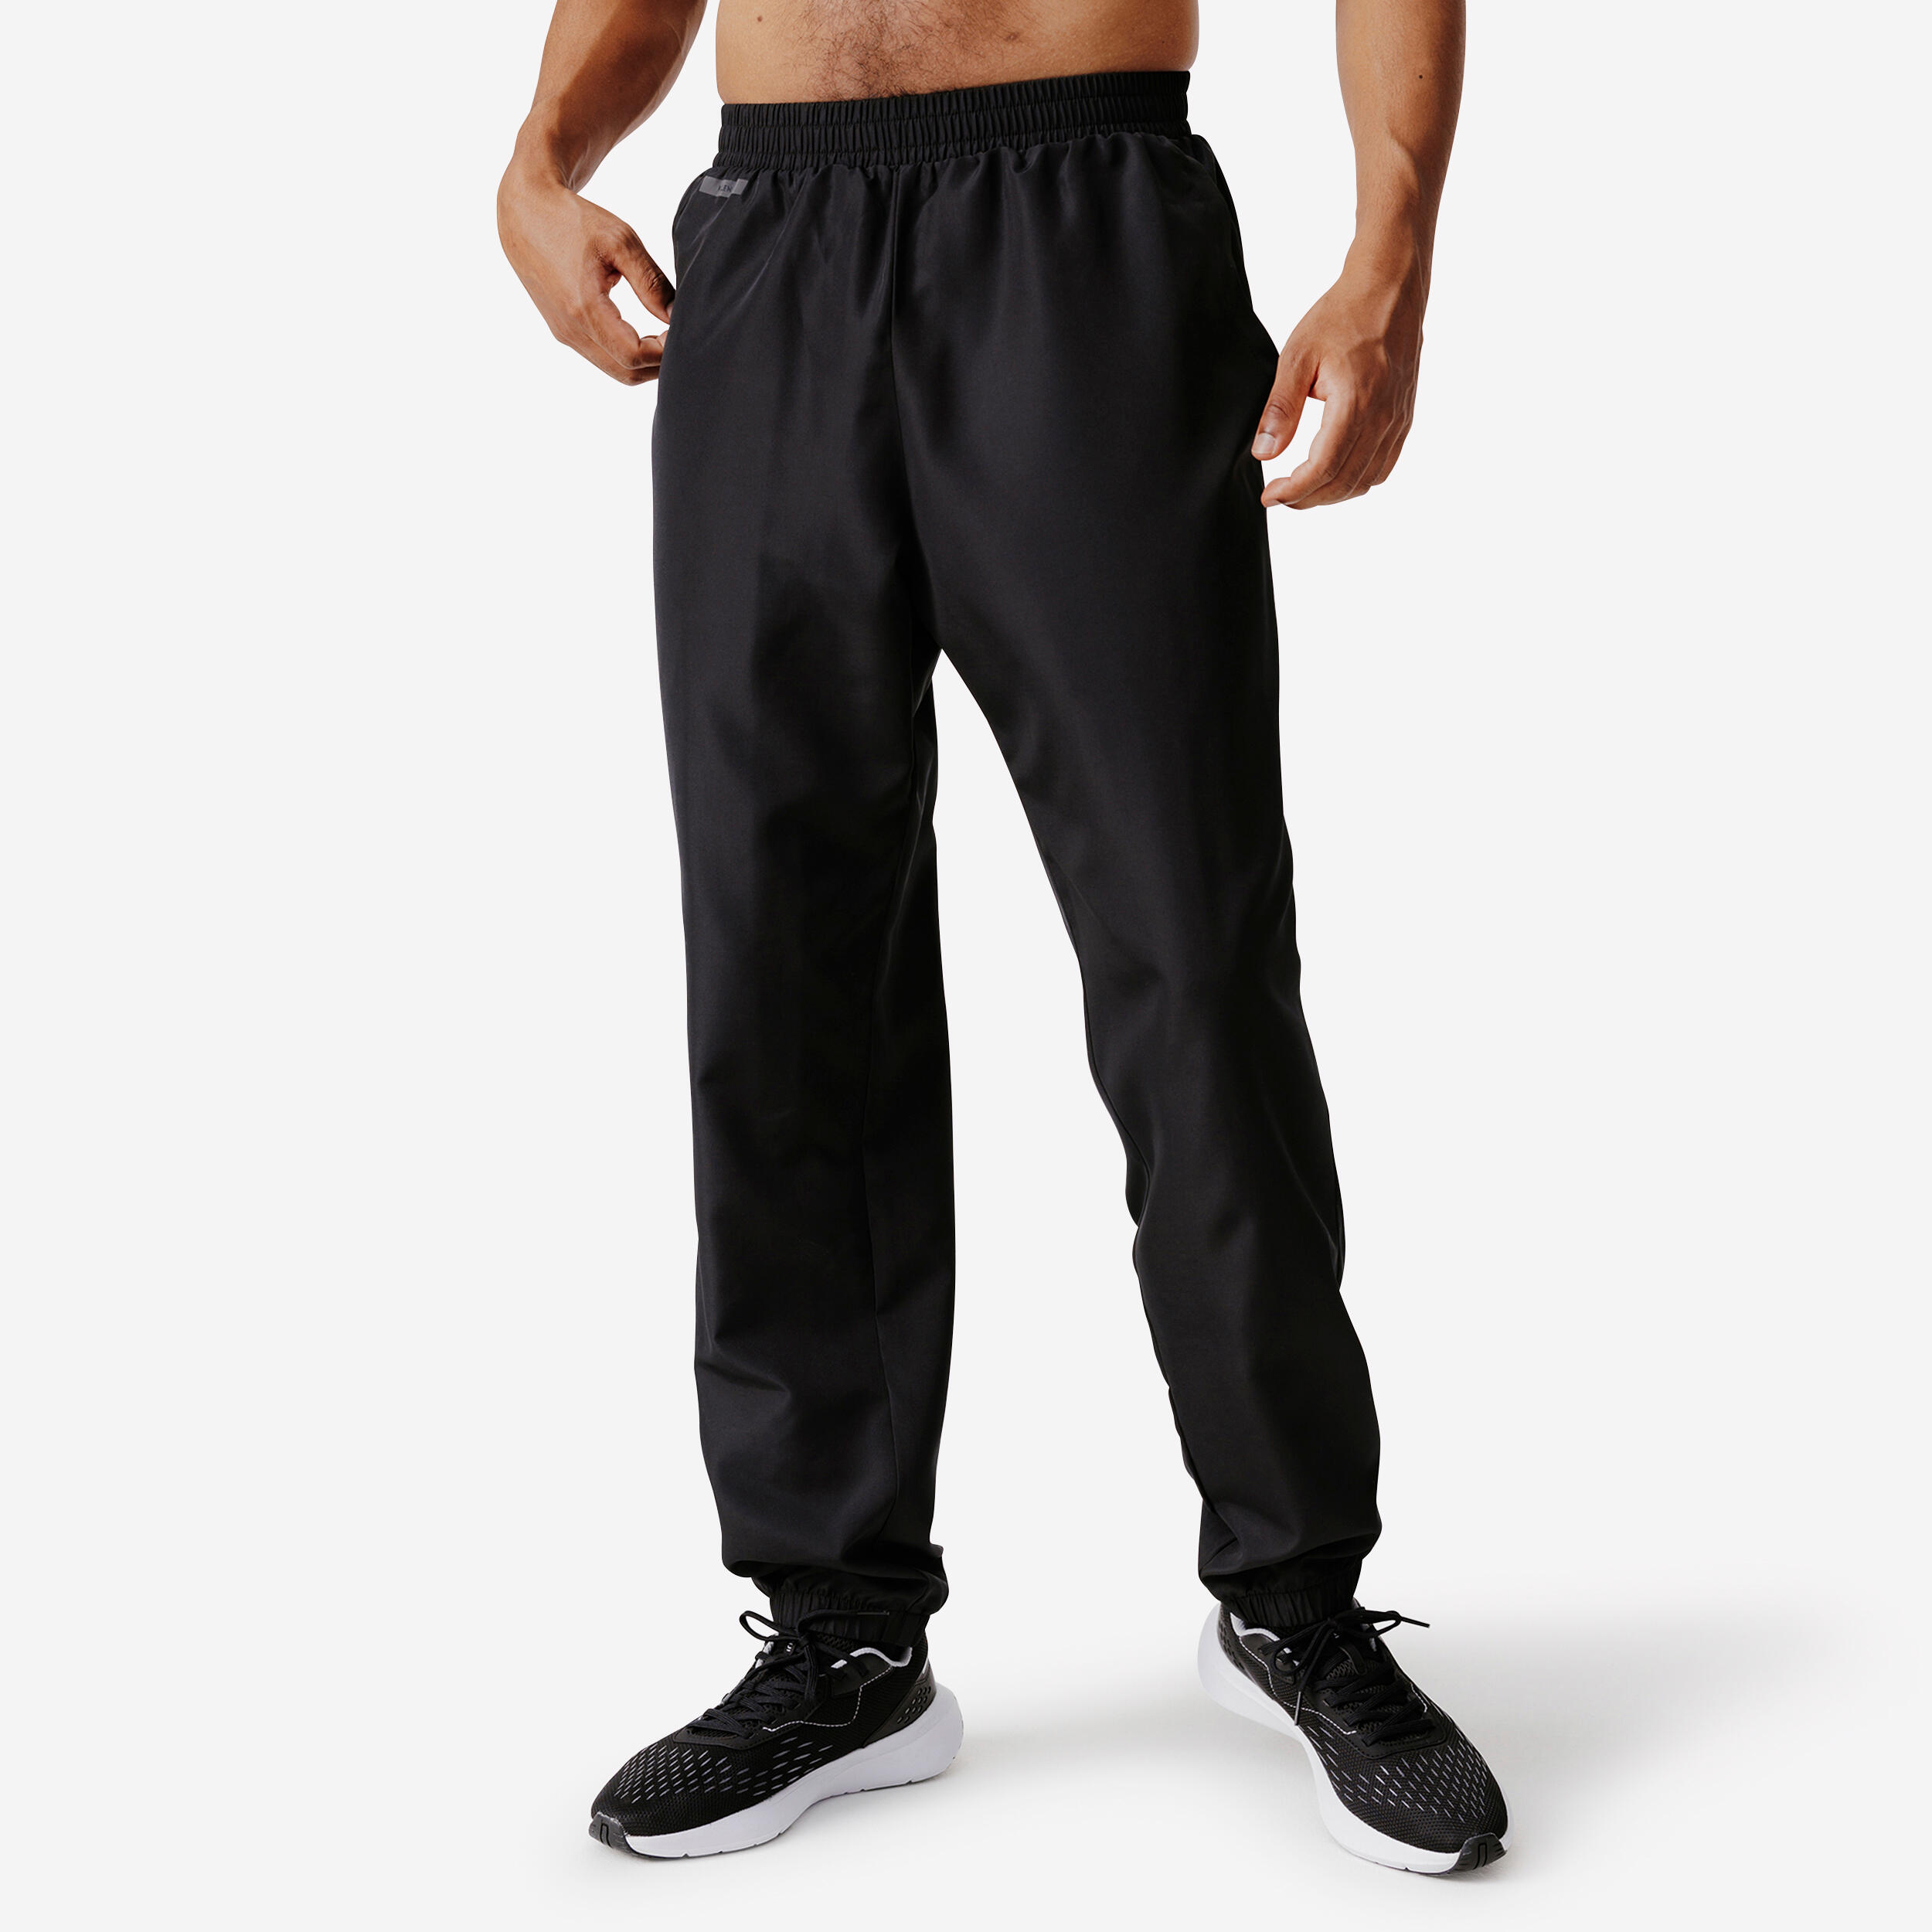 Kalenji Men's Dry 100 Breathable Running Trousers - Black